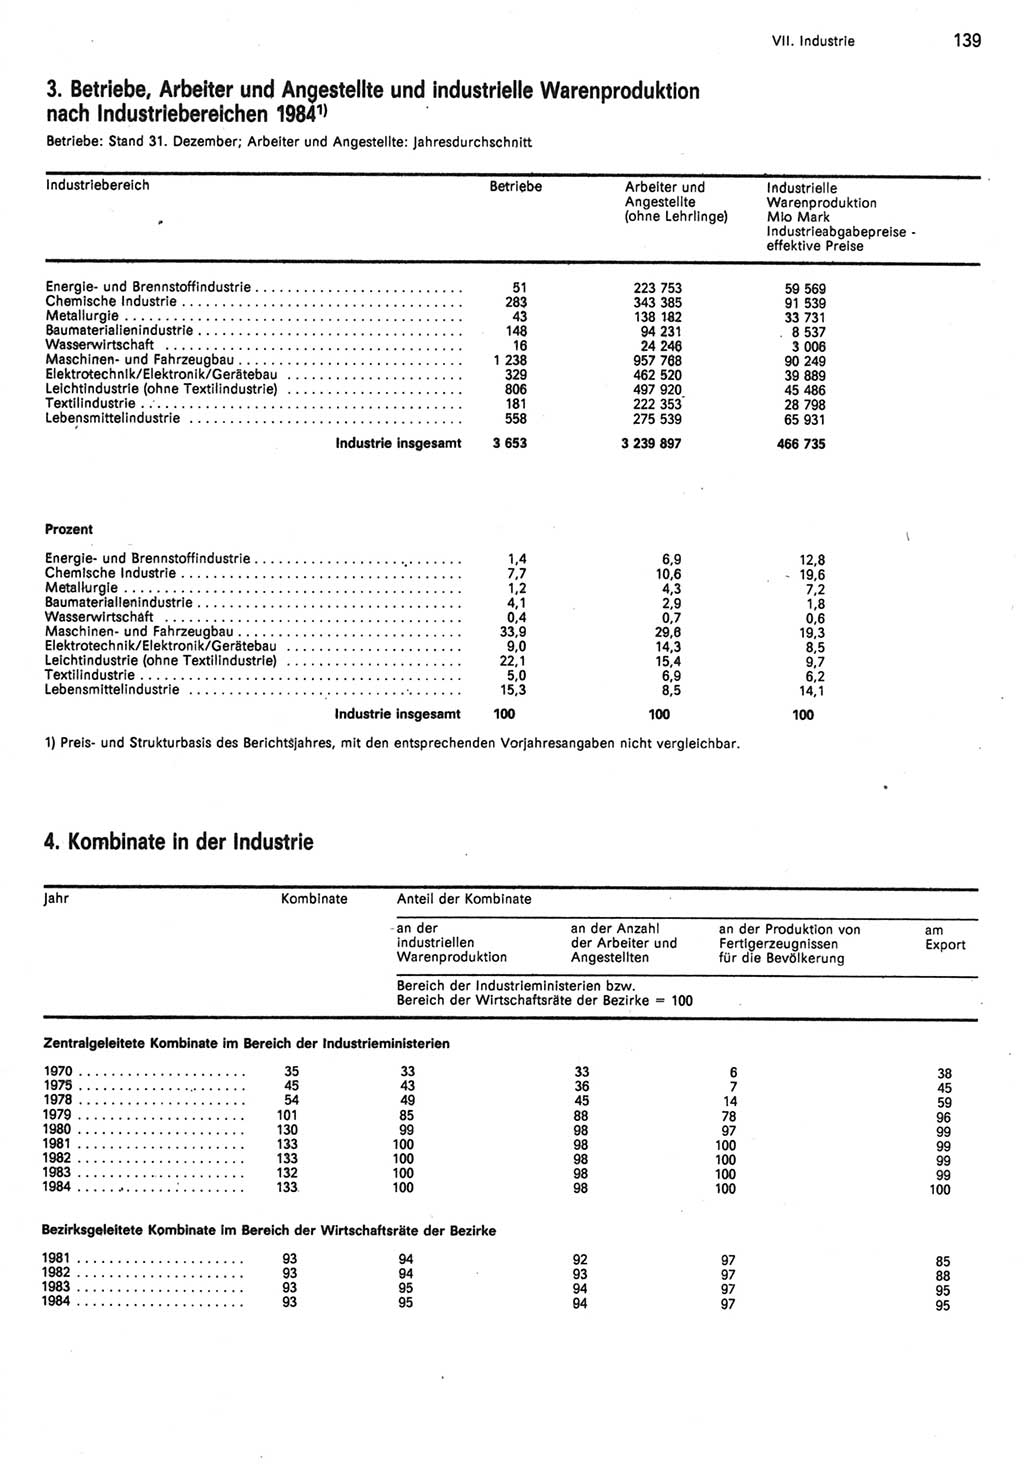 Statistisches Jahrbuch der Deutschen Demokratischen Republik (DDR) 1985, Seite 139 (Stat. Jb. DDR 1985, S. 139)